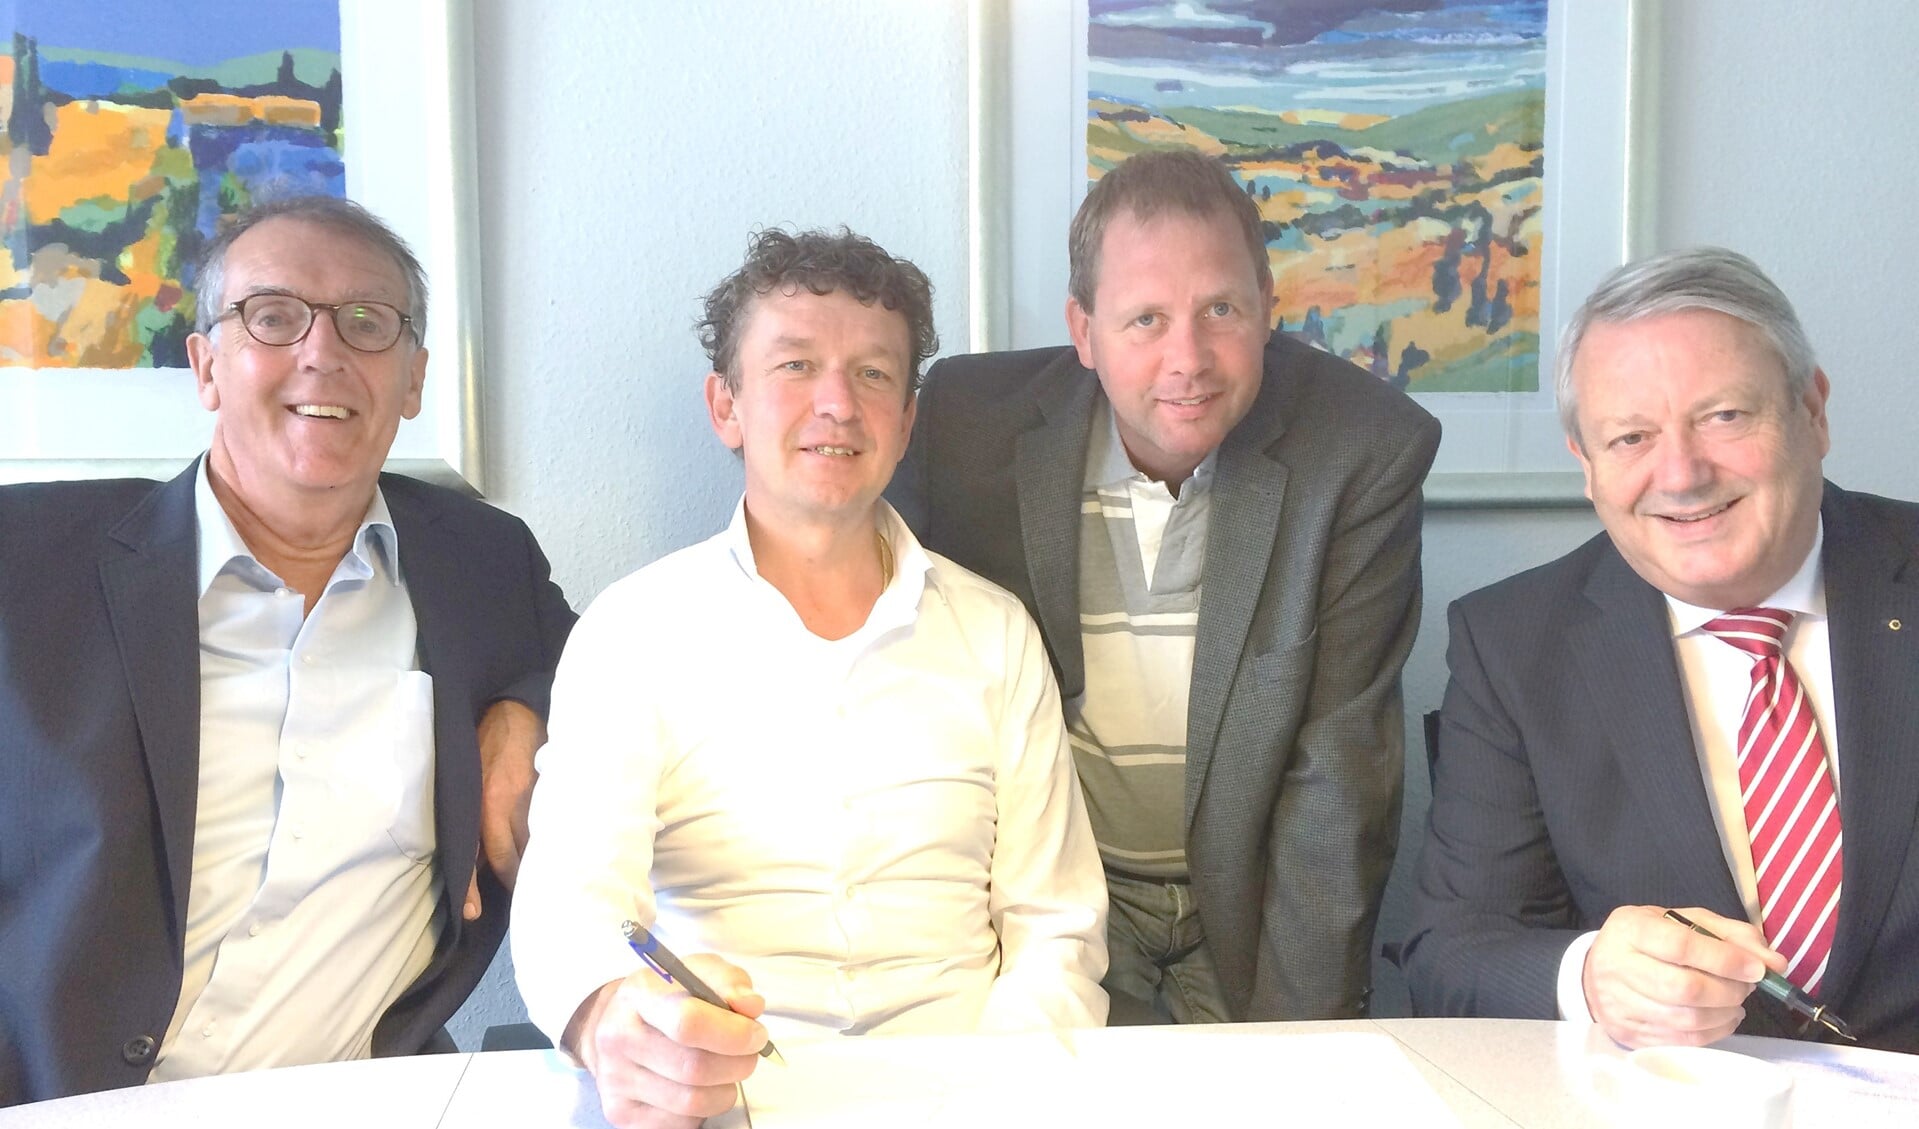 Vlnr:  Michael Beckman, Jaap Hak en Martin Vonk  (bestuur DGW)  en Lambert Greven (bestuurder RW).